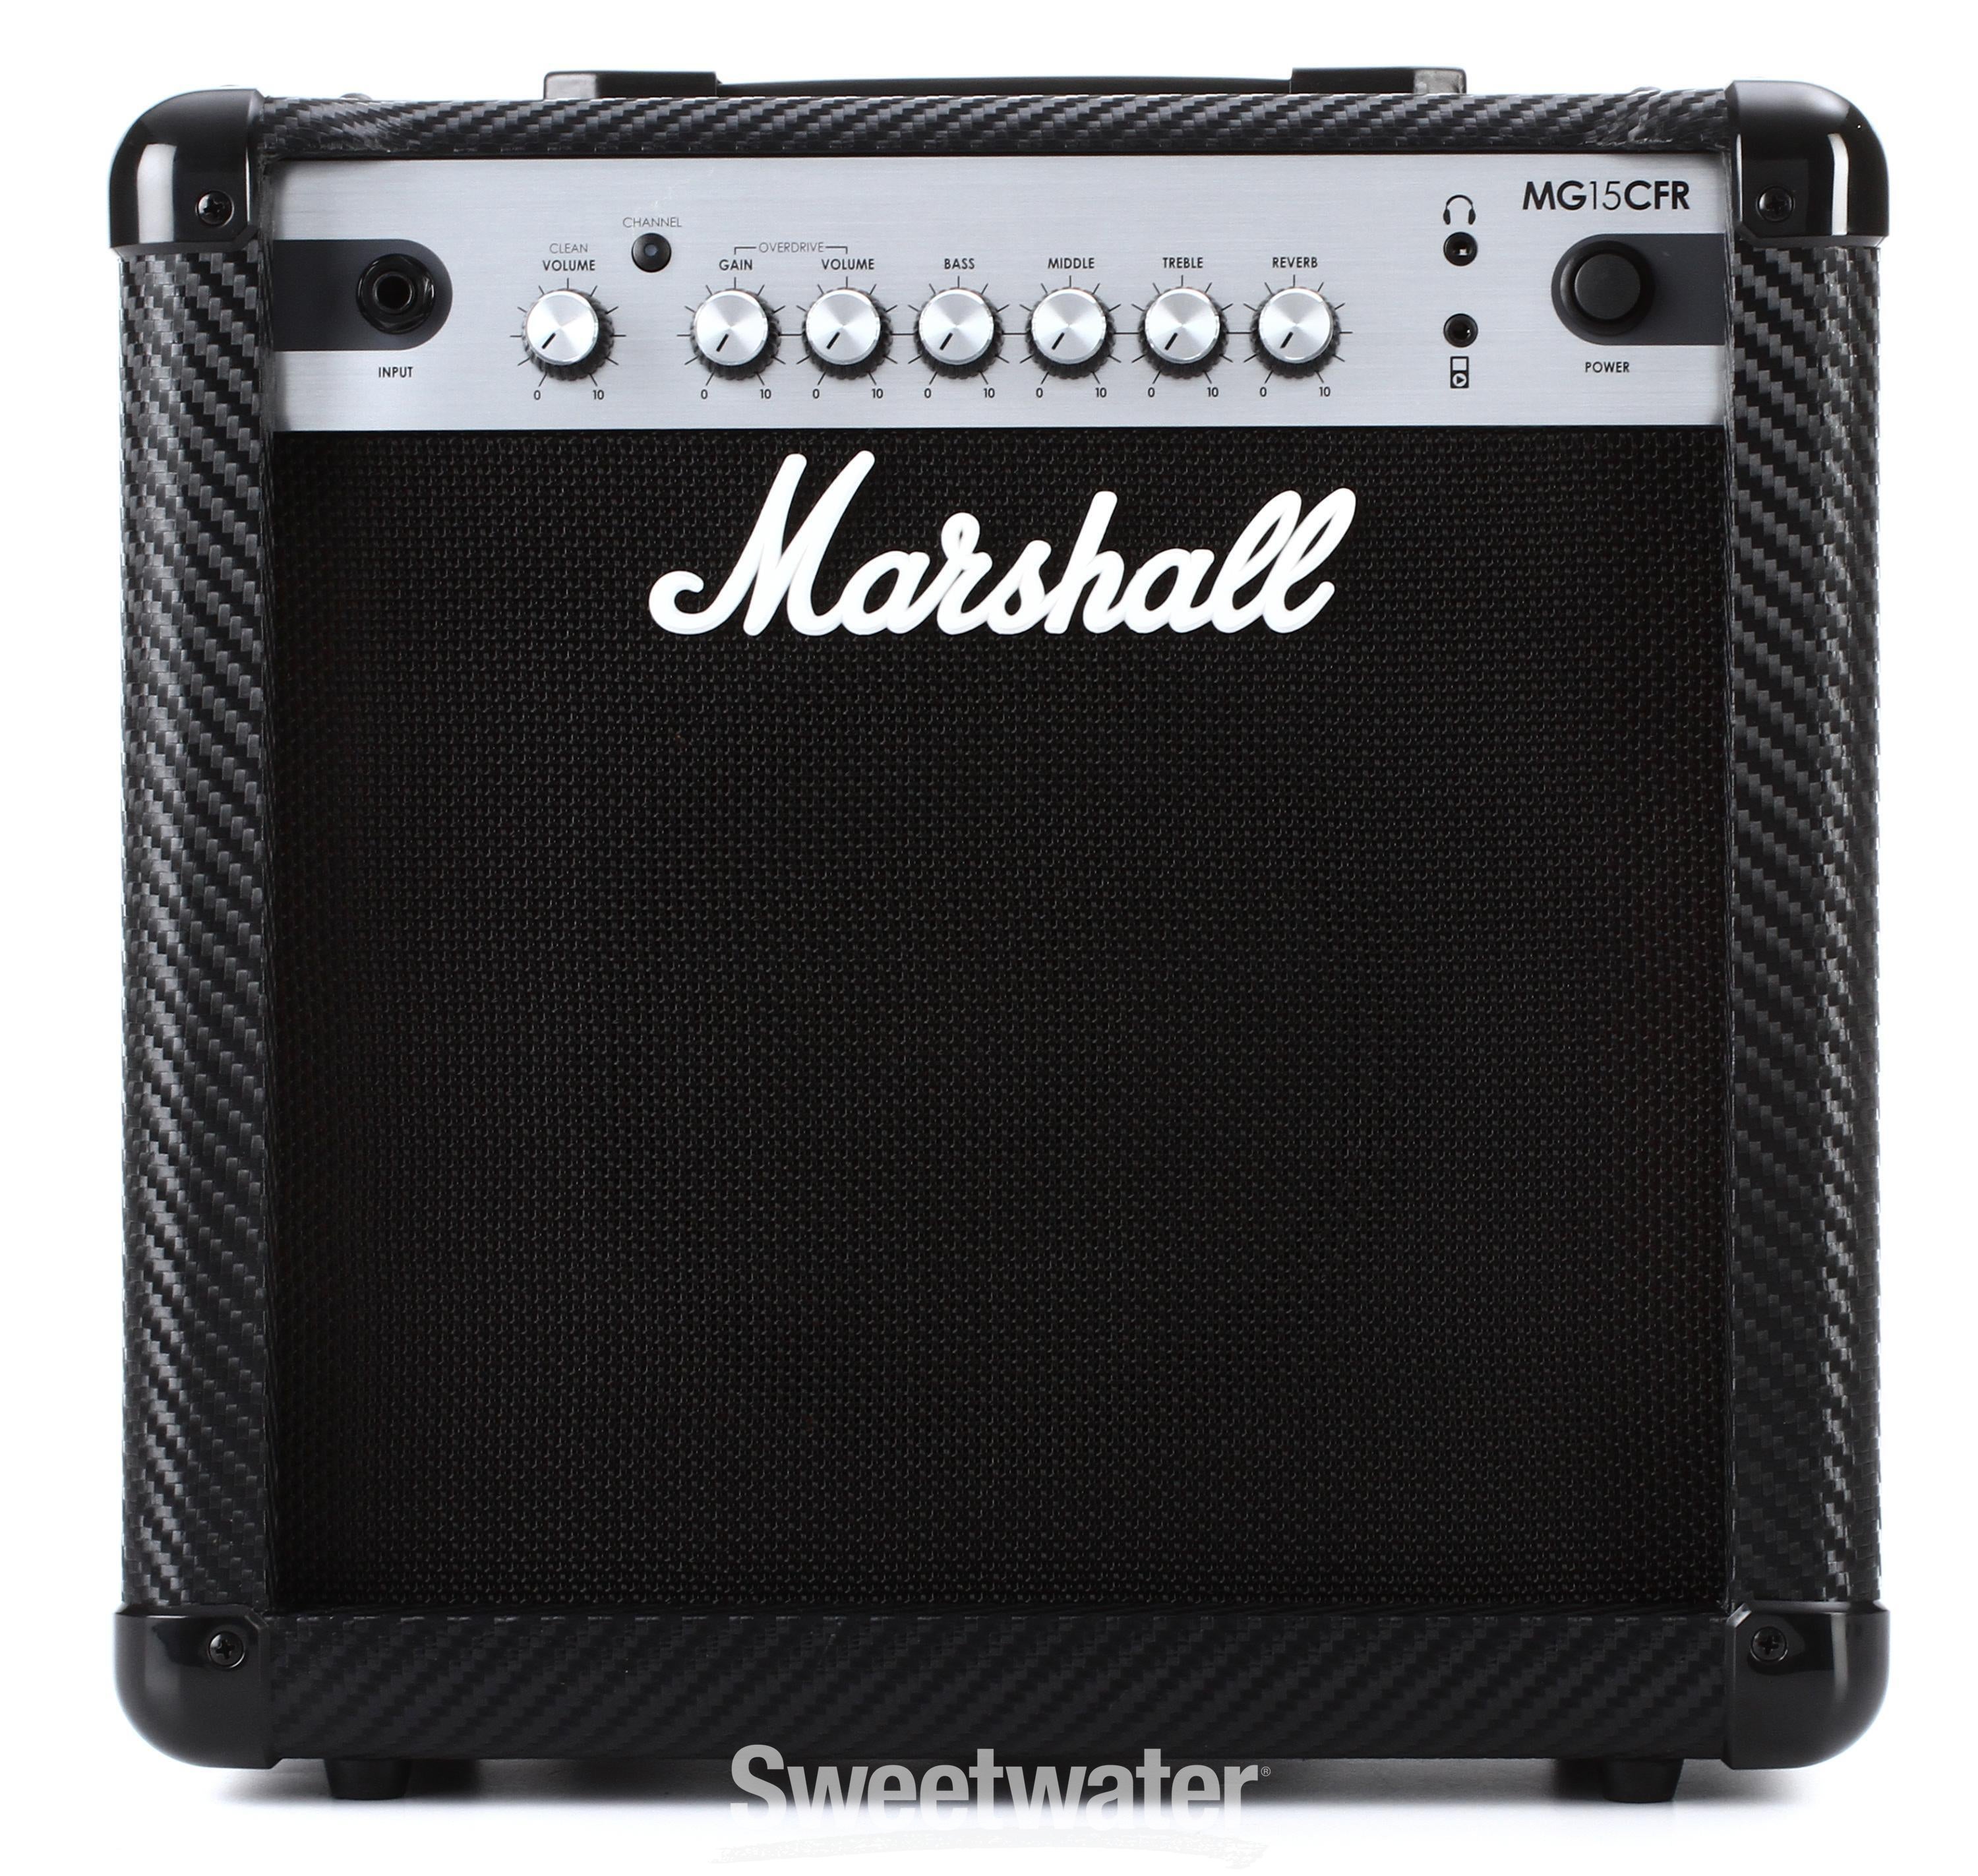 Marshall MG15CFR 15-watt 1x8